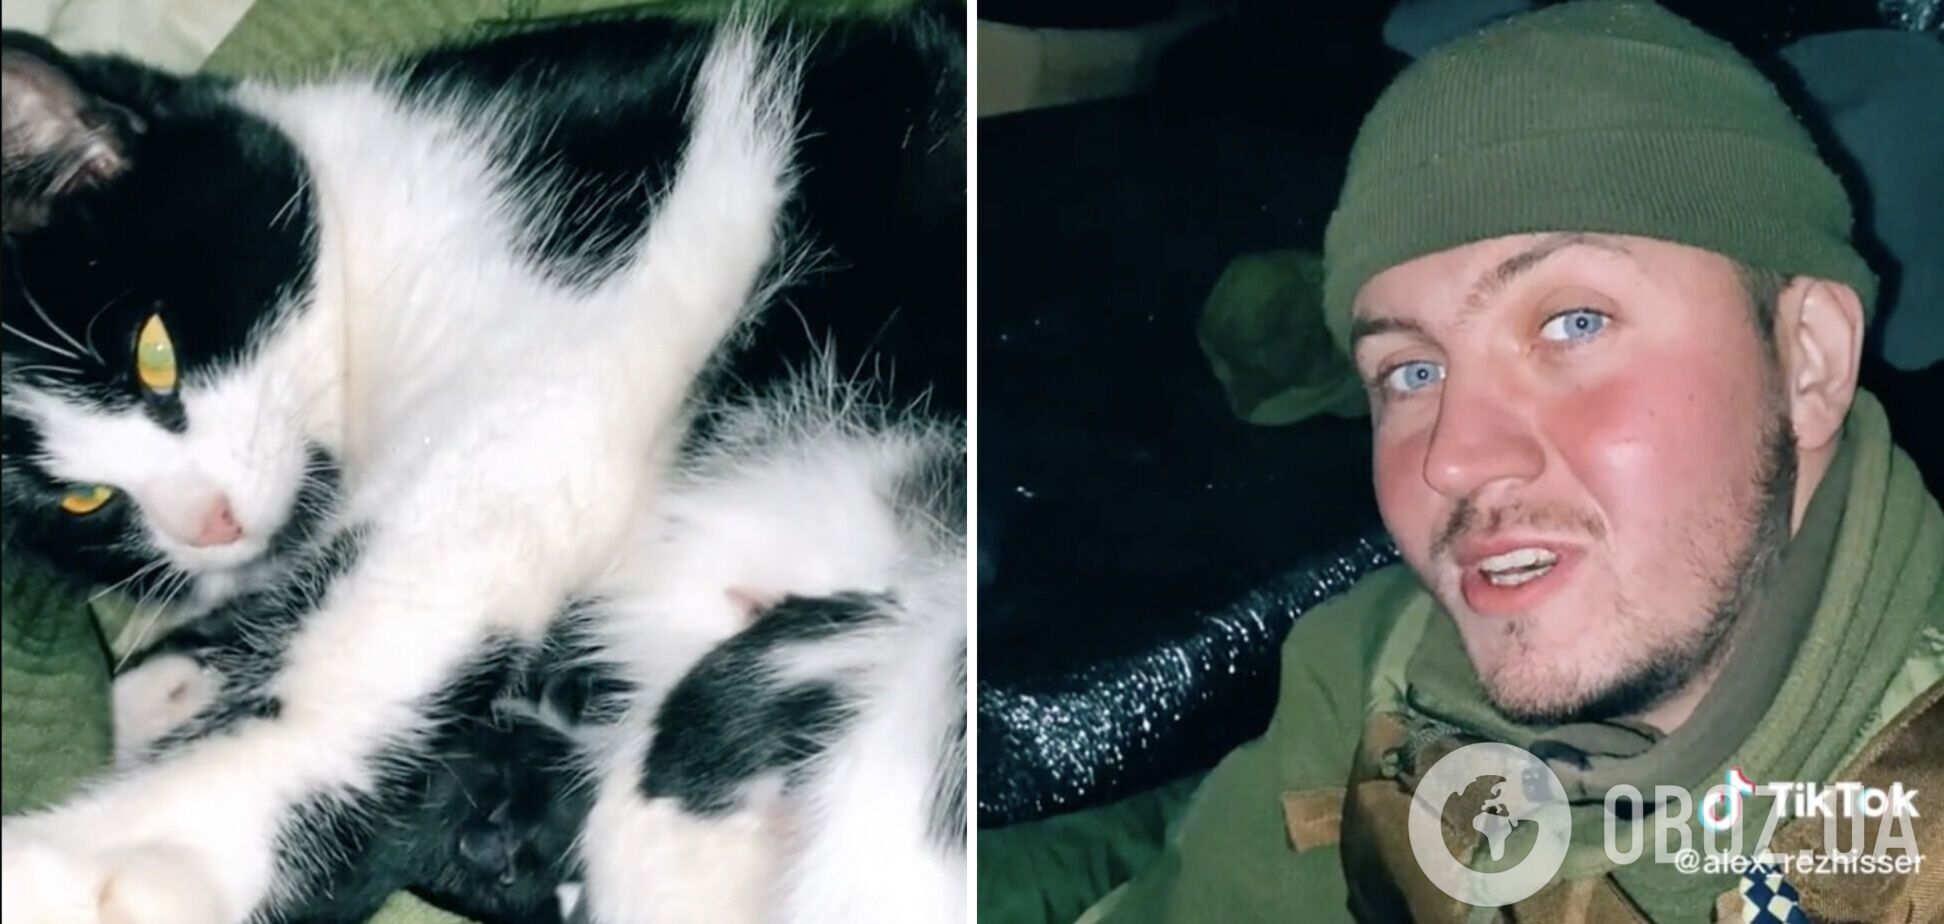 Воин ВСУ в окопе под обстрелом принял роды у кошки и показал новорожденных котят. Видео